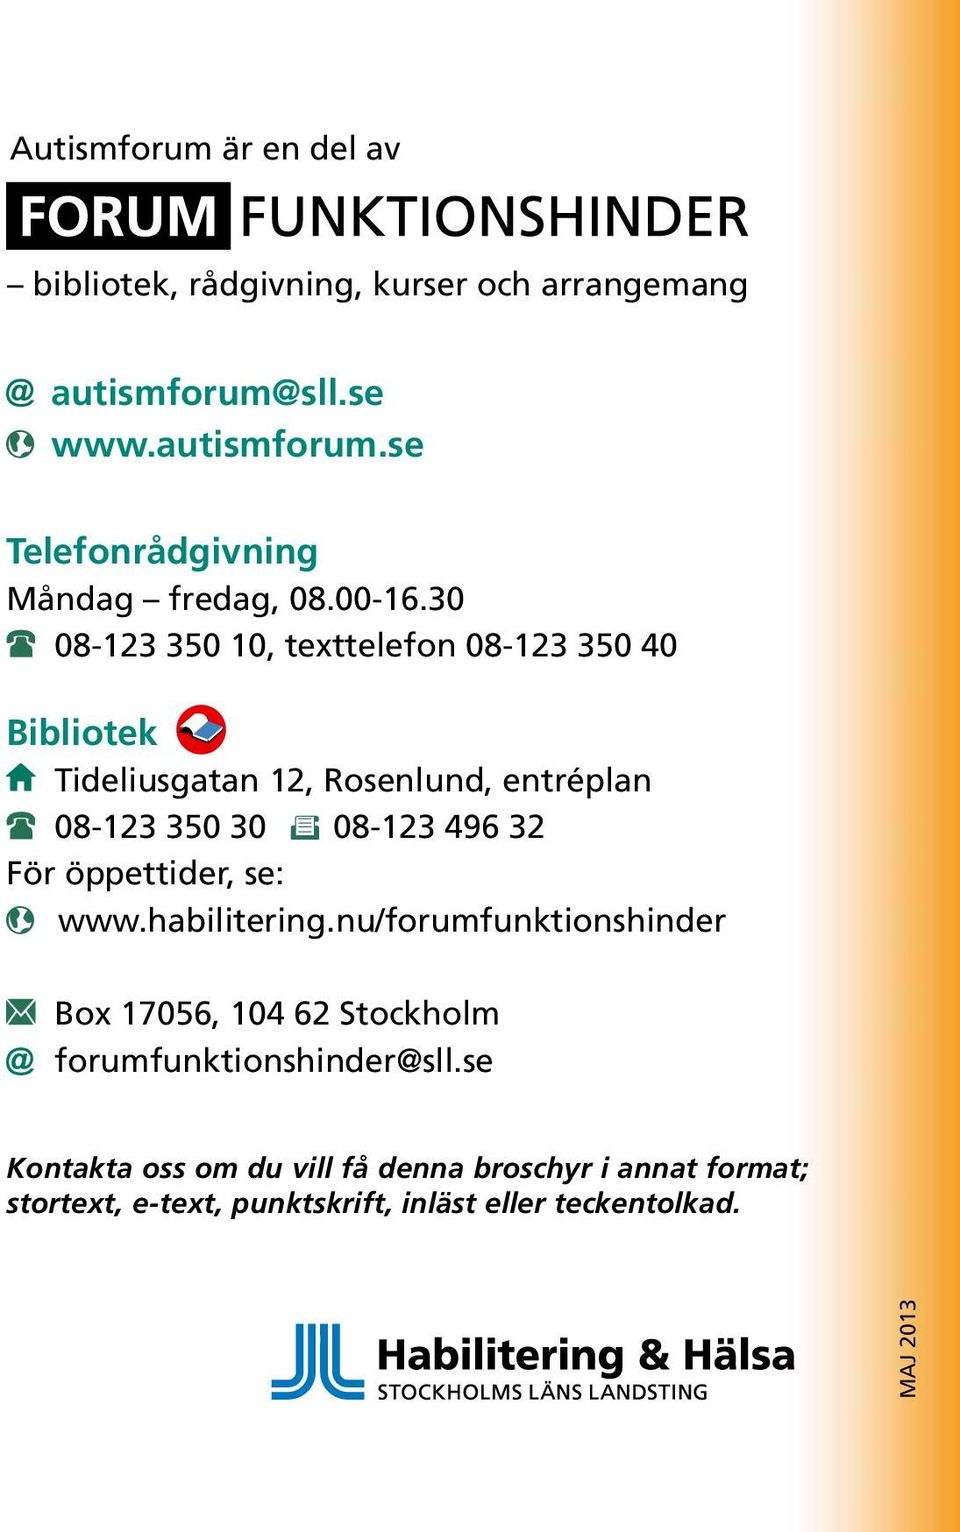 Bibliotek aktuell information om Tideliusgatan 12, Rosenlund, entréplan funktionsnedsättningar 08-123 350 30 08-123 496 32 För öppettider, se: